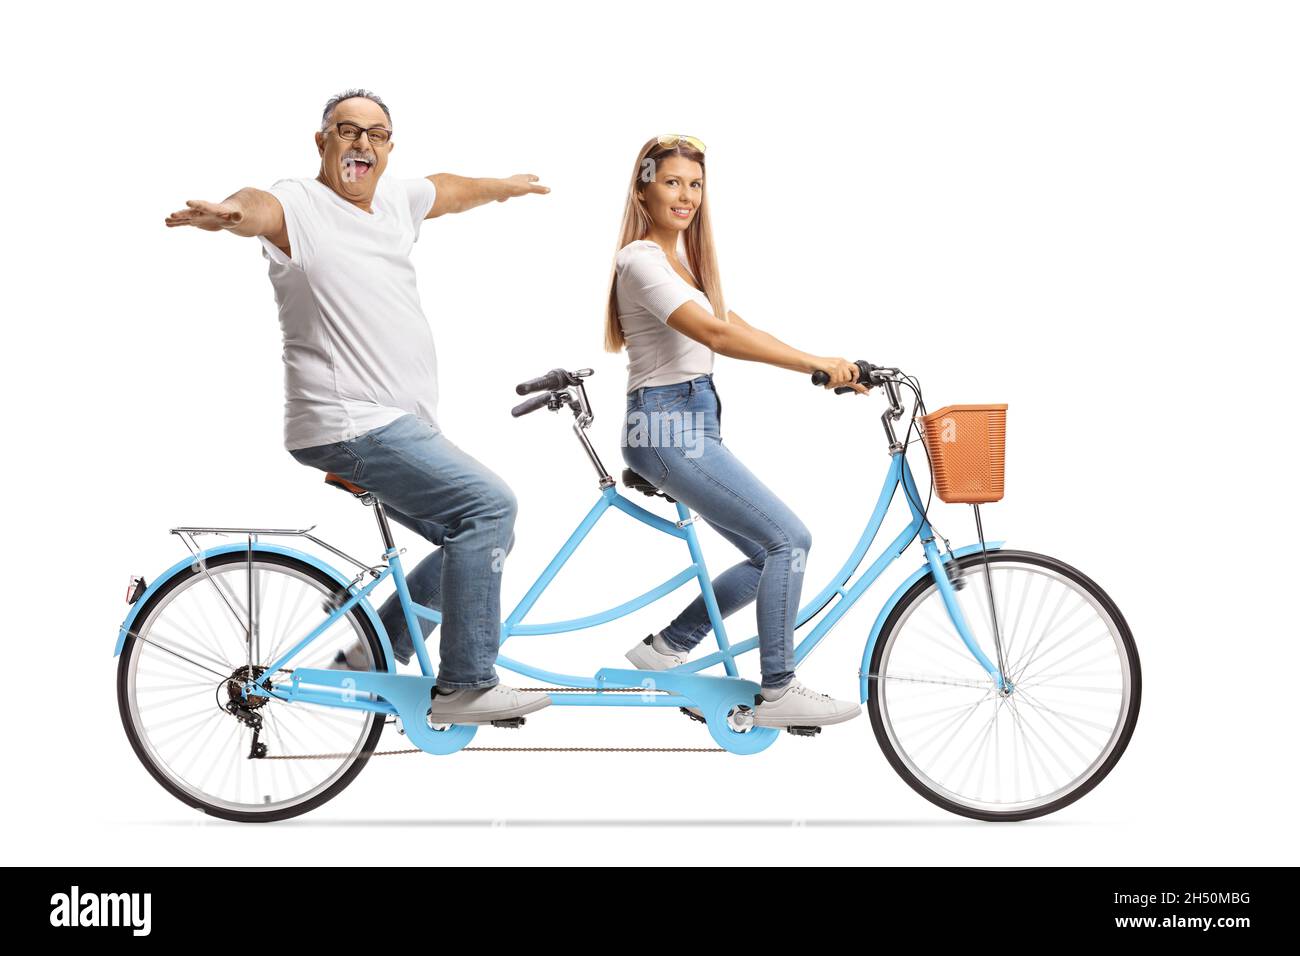 Reifer Mann und eine junge Frau auf einem Tandem-Fahrrad isoliert auf weißem Hintergrund Stockfoto